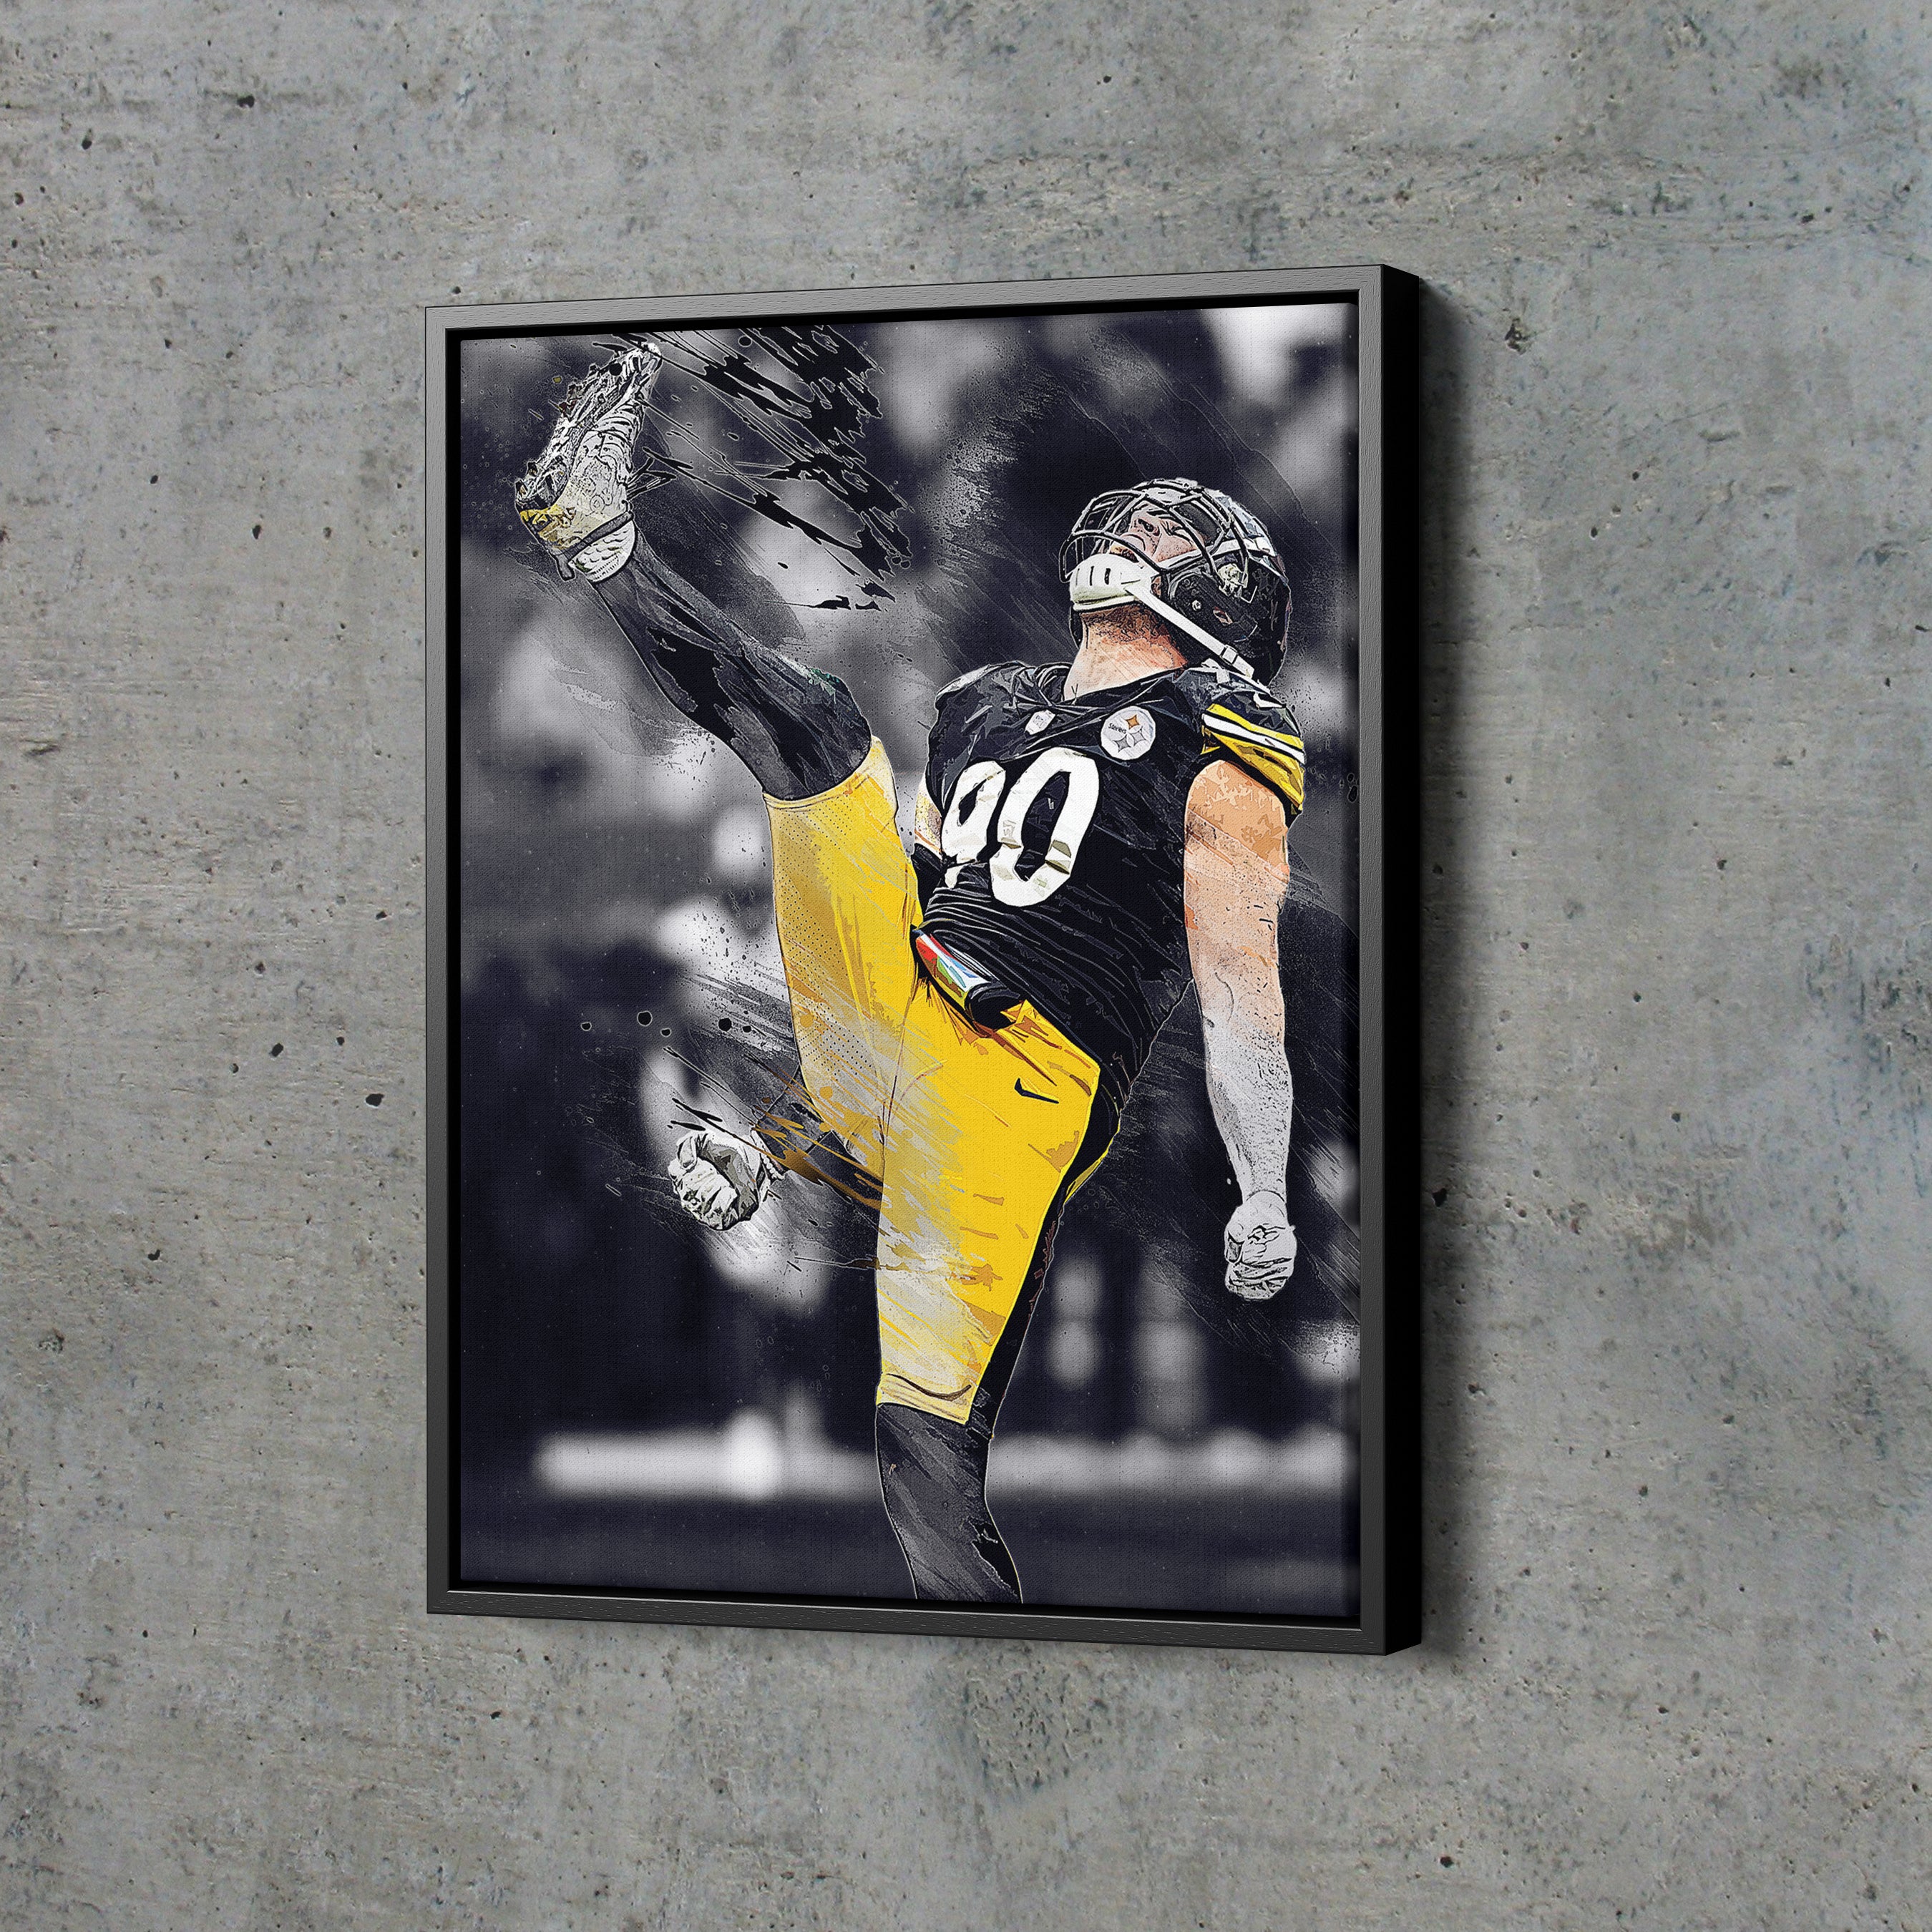 NFL Pittsburgh Steelers - T.J. Watt 21 Wall Poster with Pushpins, 22.375 x  34